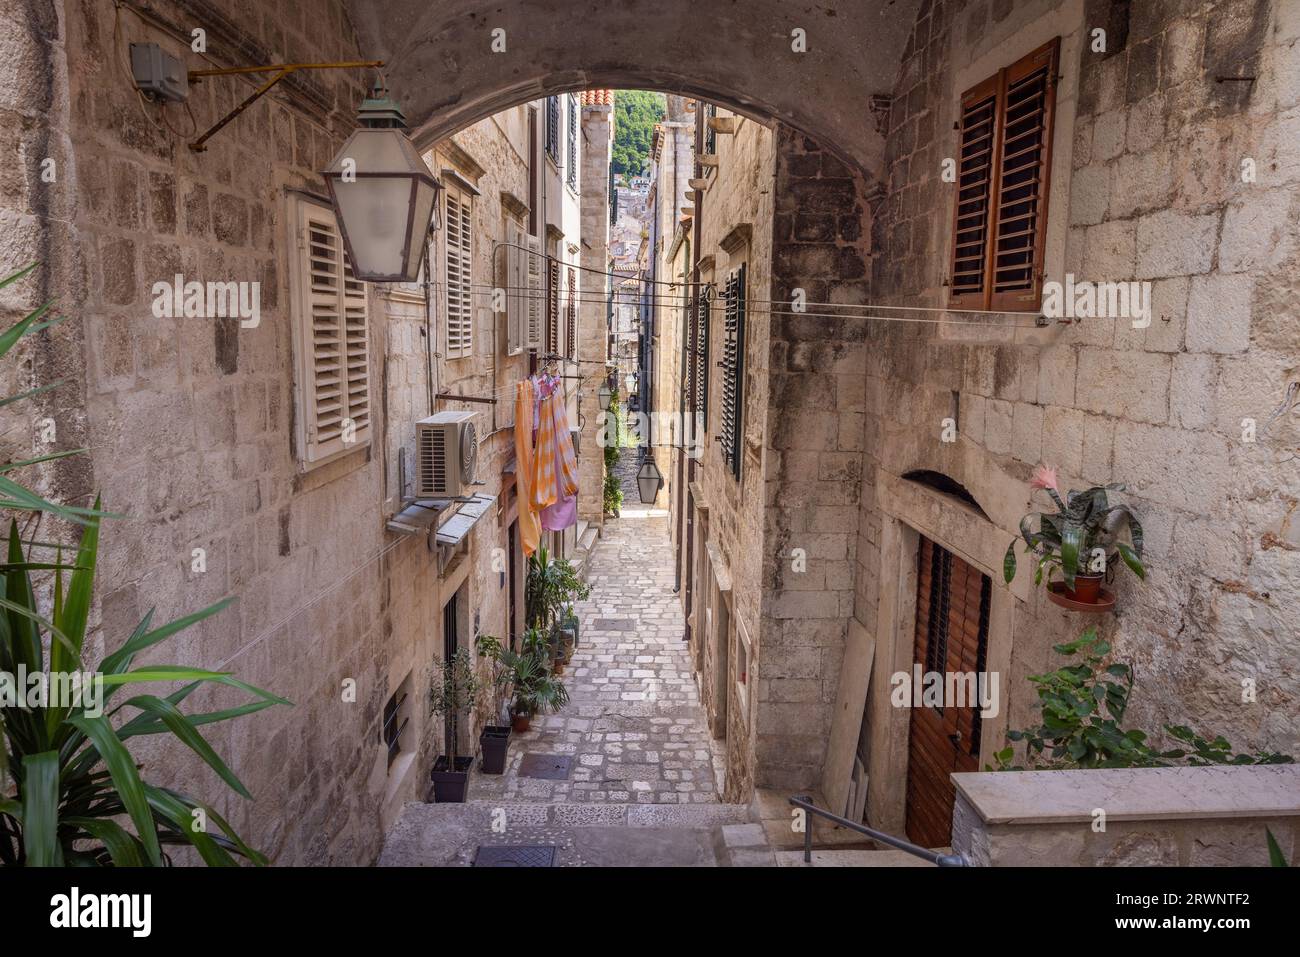 La città medievale di Dubrovnik, Dalmazia, Croazia. Strada stretta con una scala e un arco. Foto Stock